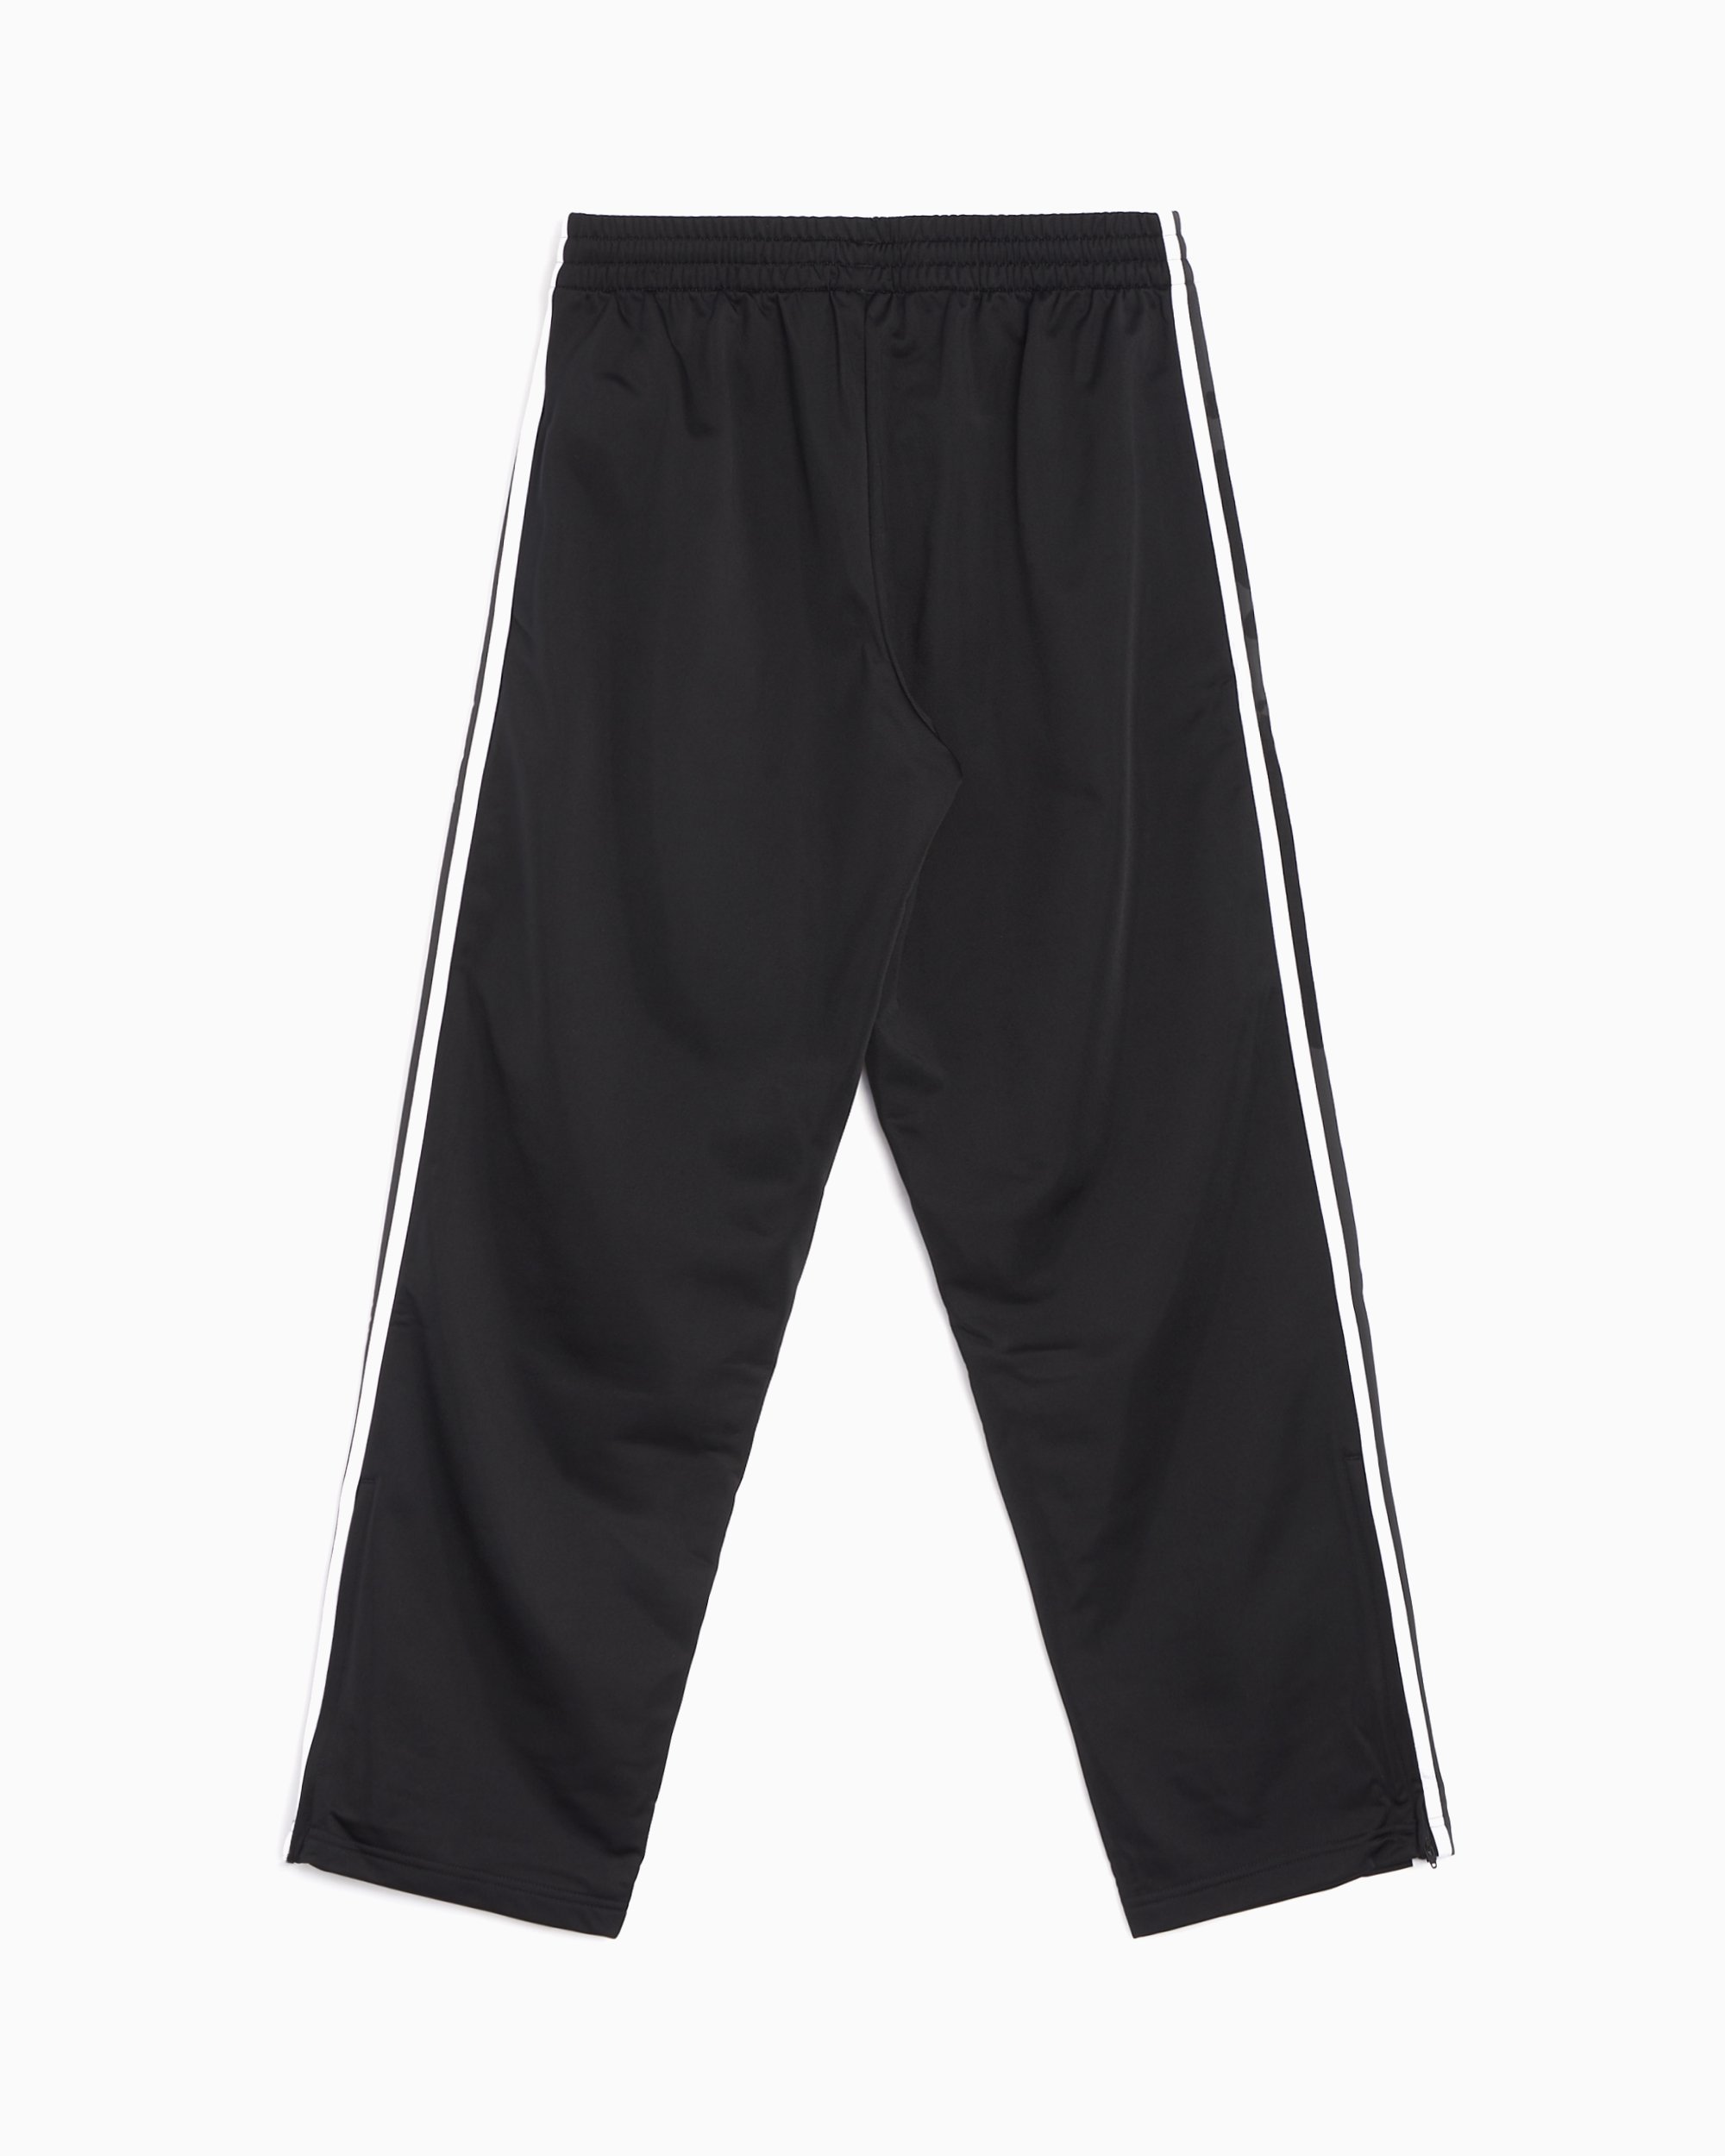 adidas Originals Men's Adicolor Classics Firebird Track Pants Large Black